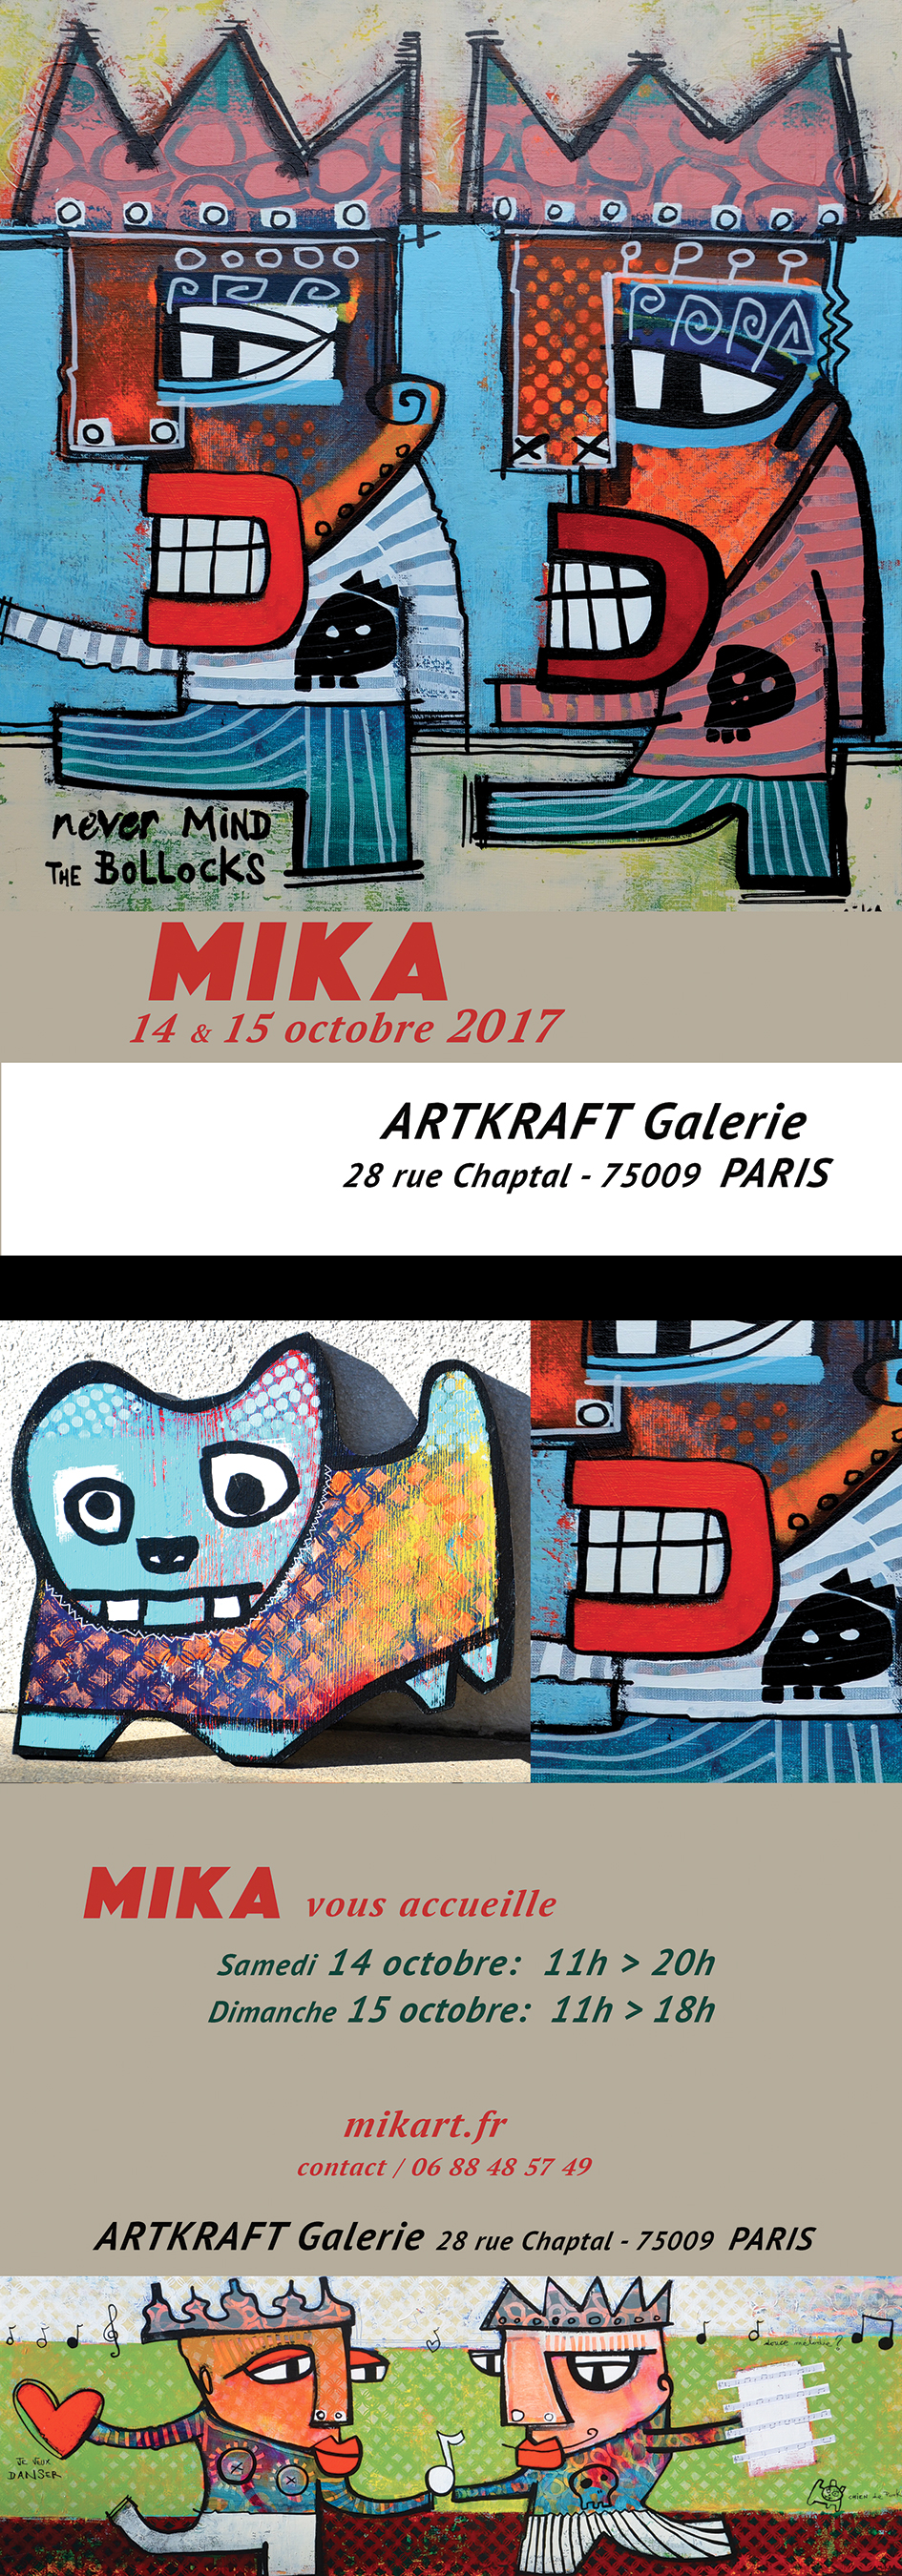 mika-paris2017web